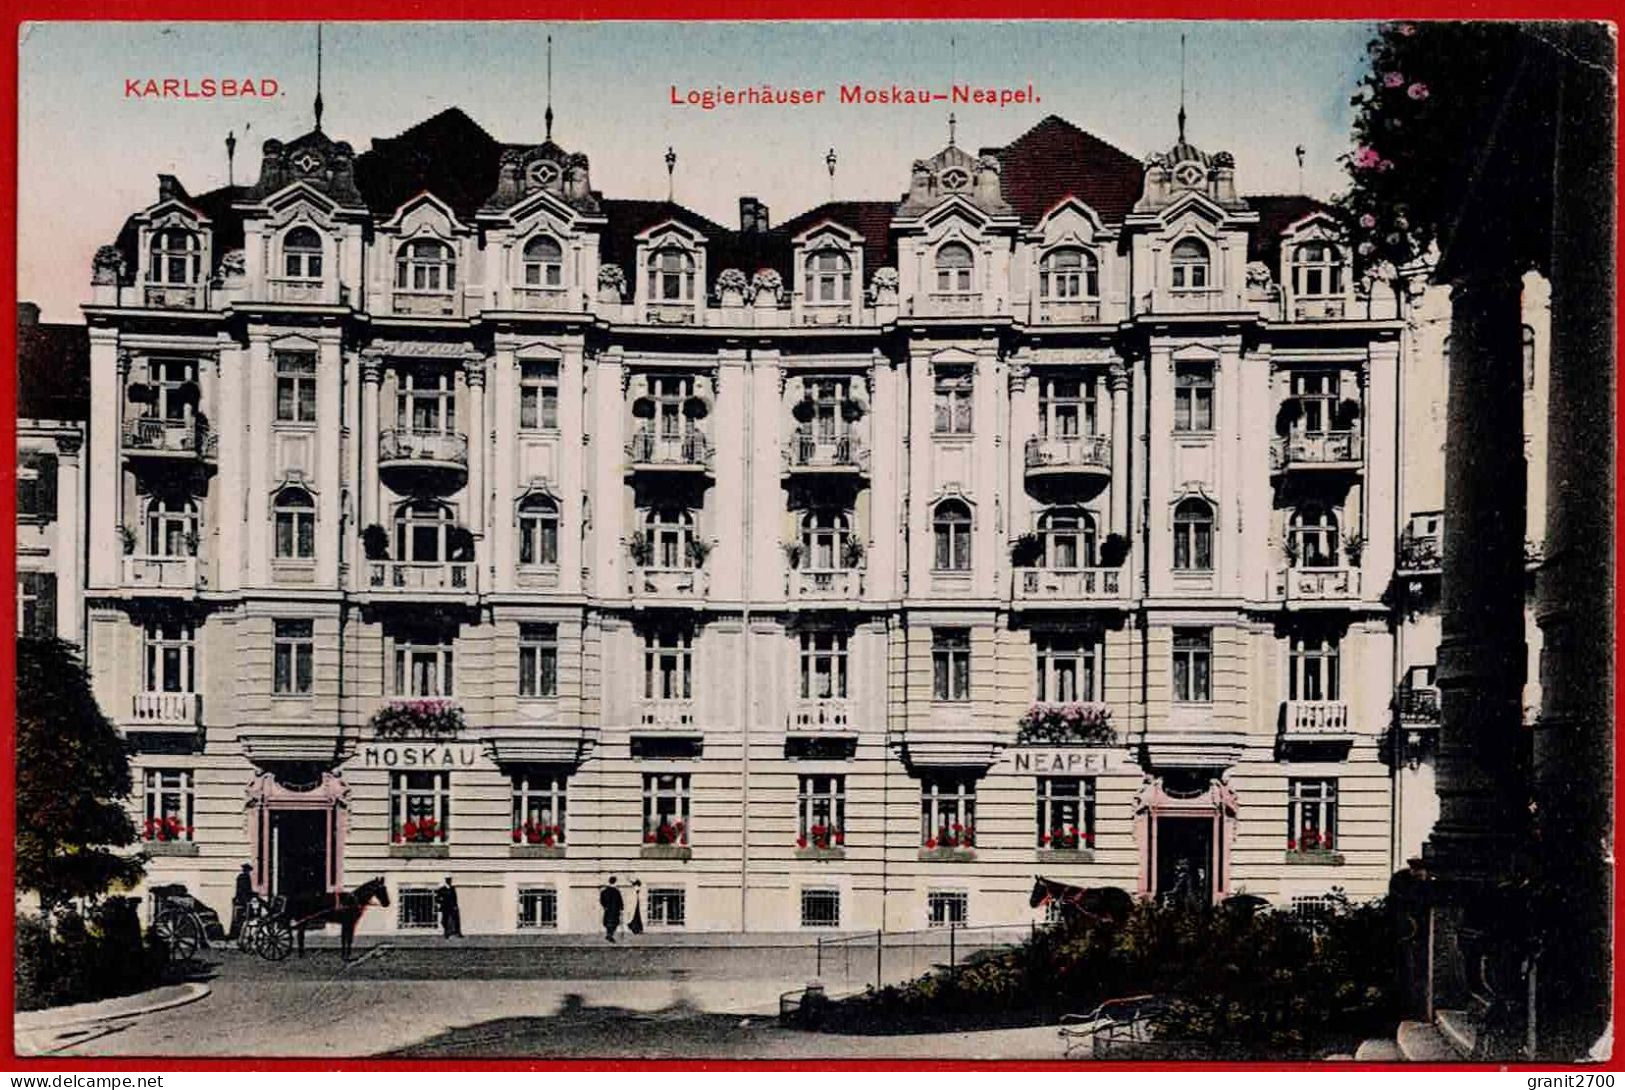 KARLSBAD. Logierhäuser Moskau-Neapel.1913 - Czech Republic